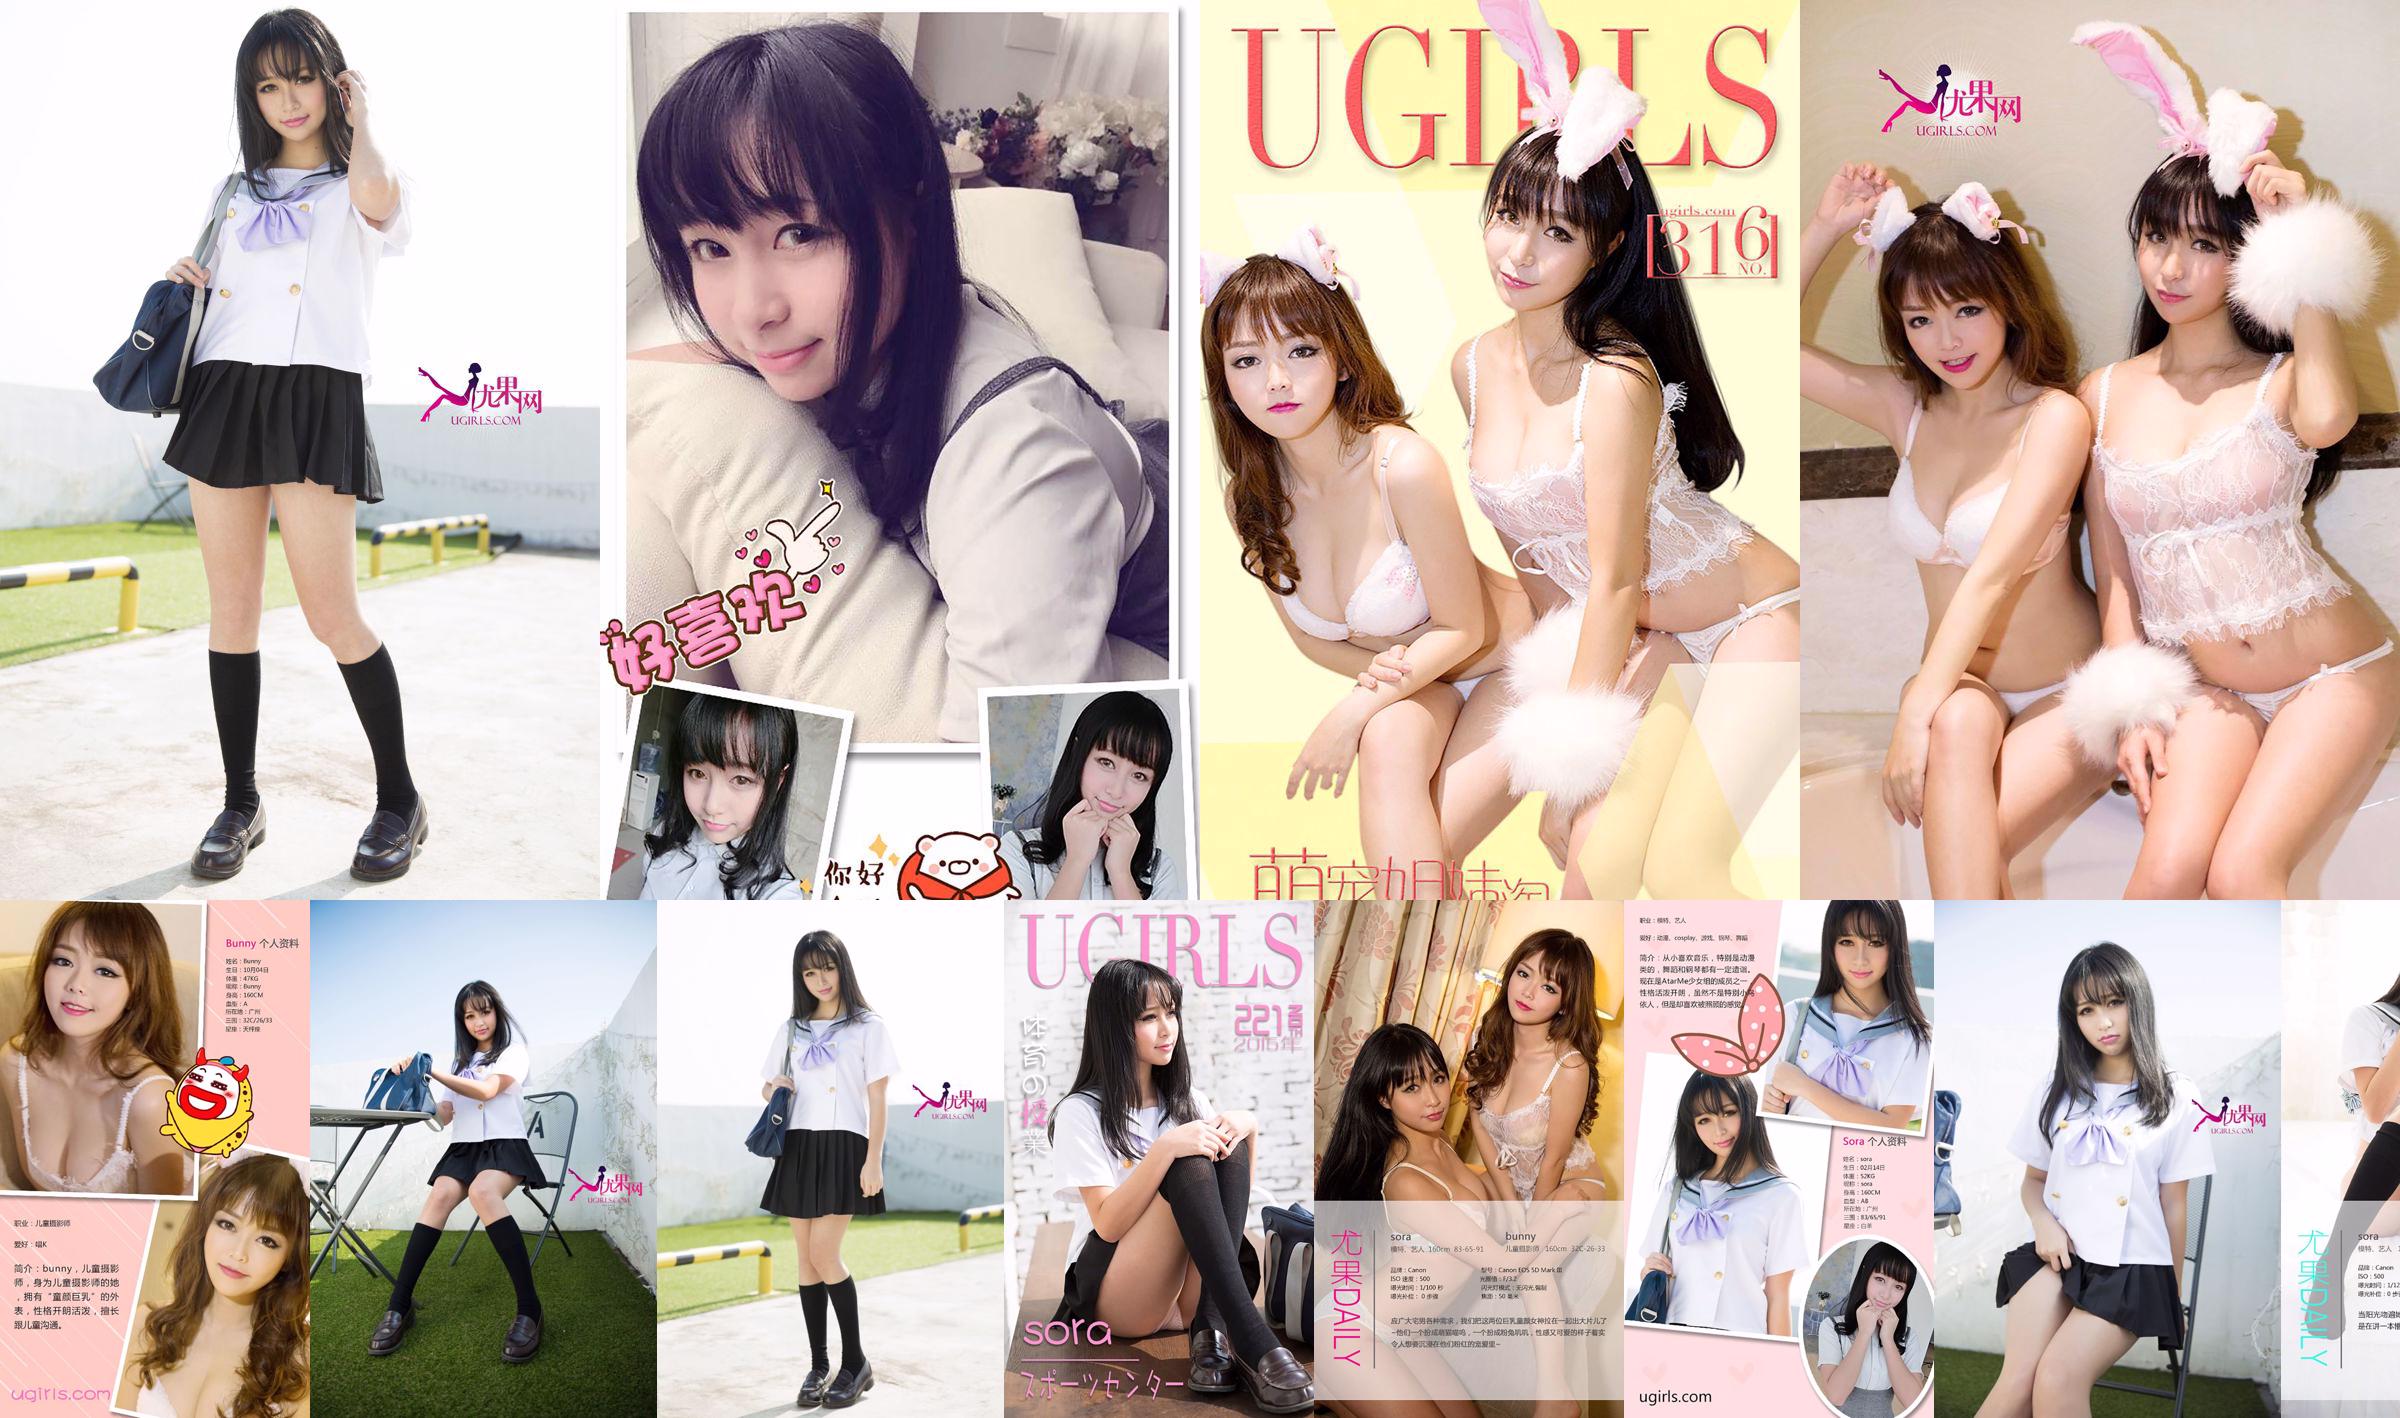 소라 "일본 교복 여자 저널"[Ugirls] U142 No.8c5360 페이지 1